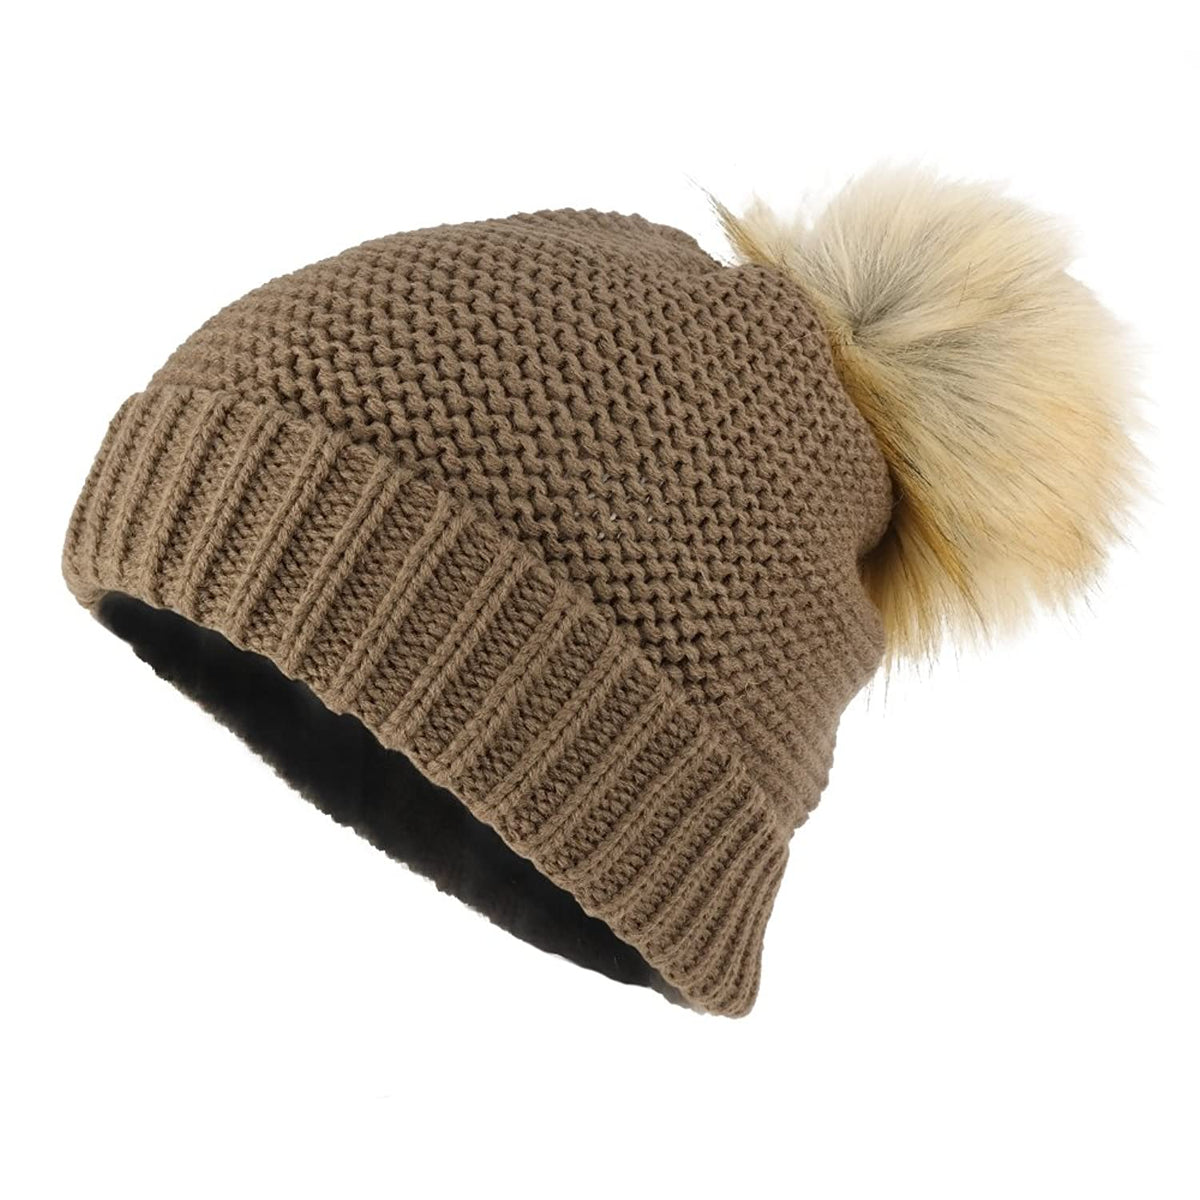 Armycrew Winter Knit Pom Pom Accent Beanie Hat